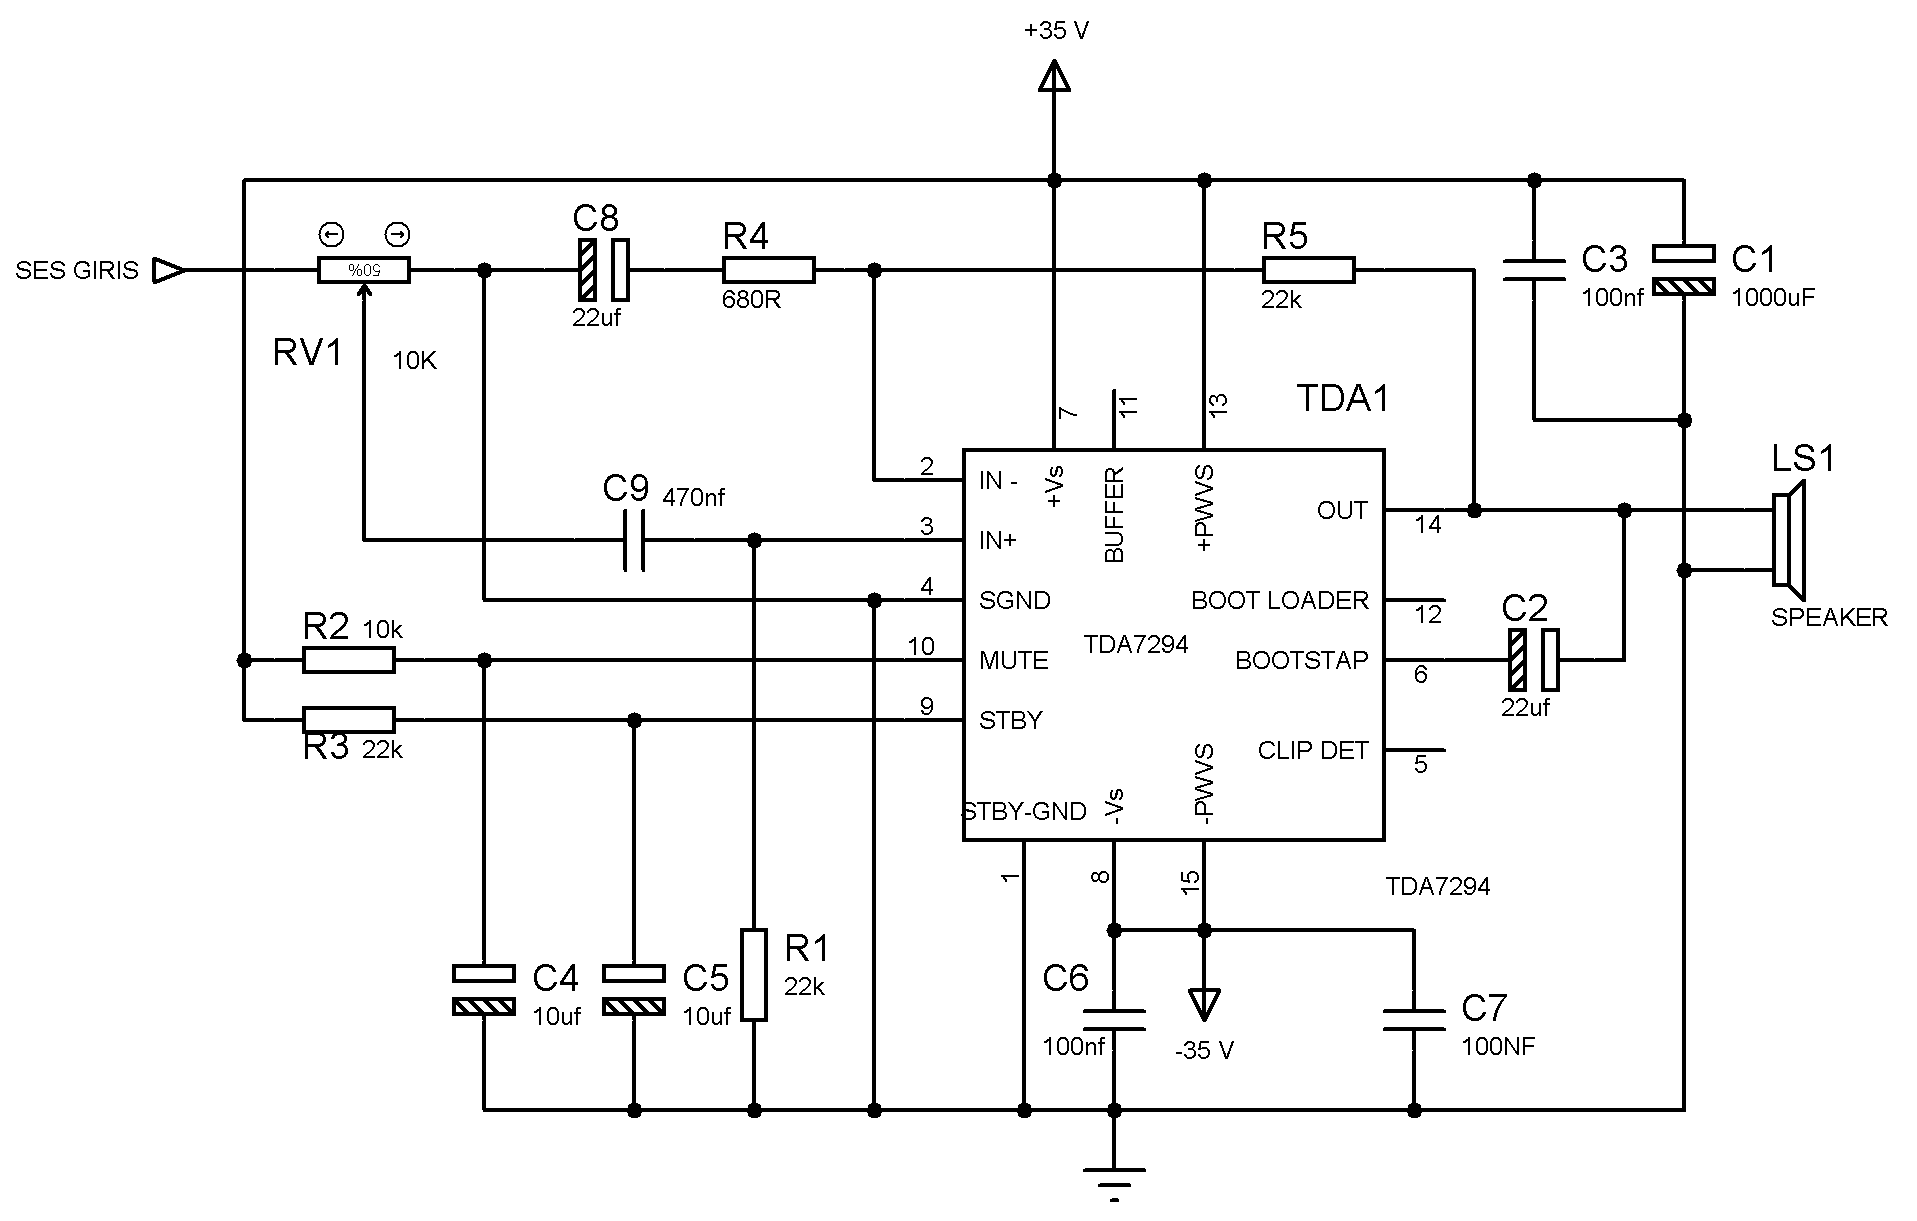 Tda7293 усилитель схема